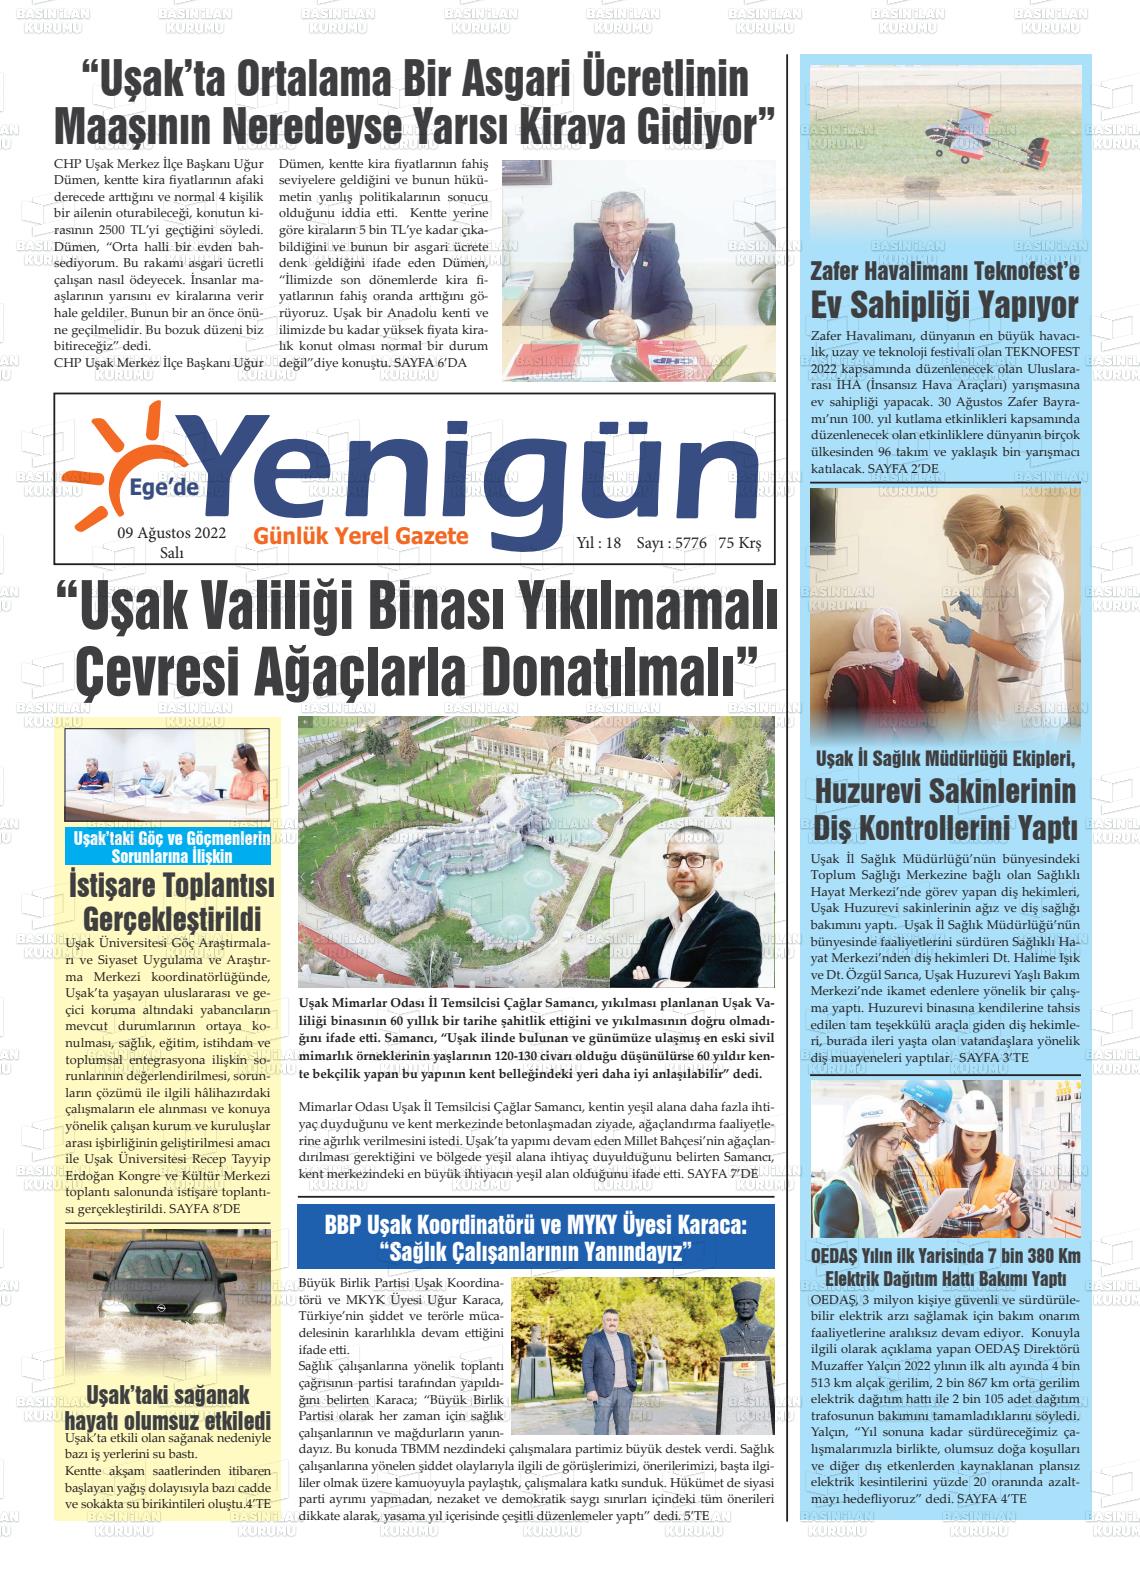 09 Ağustos 2022 EGE'DE YENİGÜN GAZETESİ Gazete Manşeti